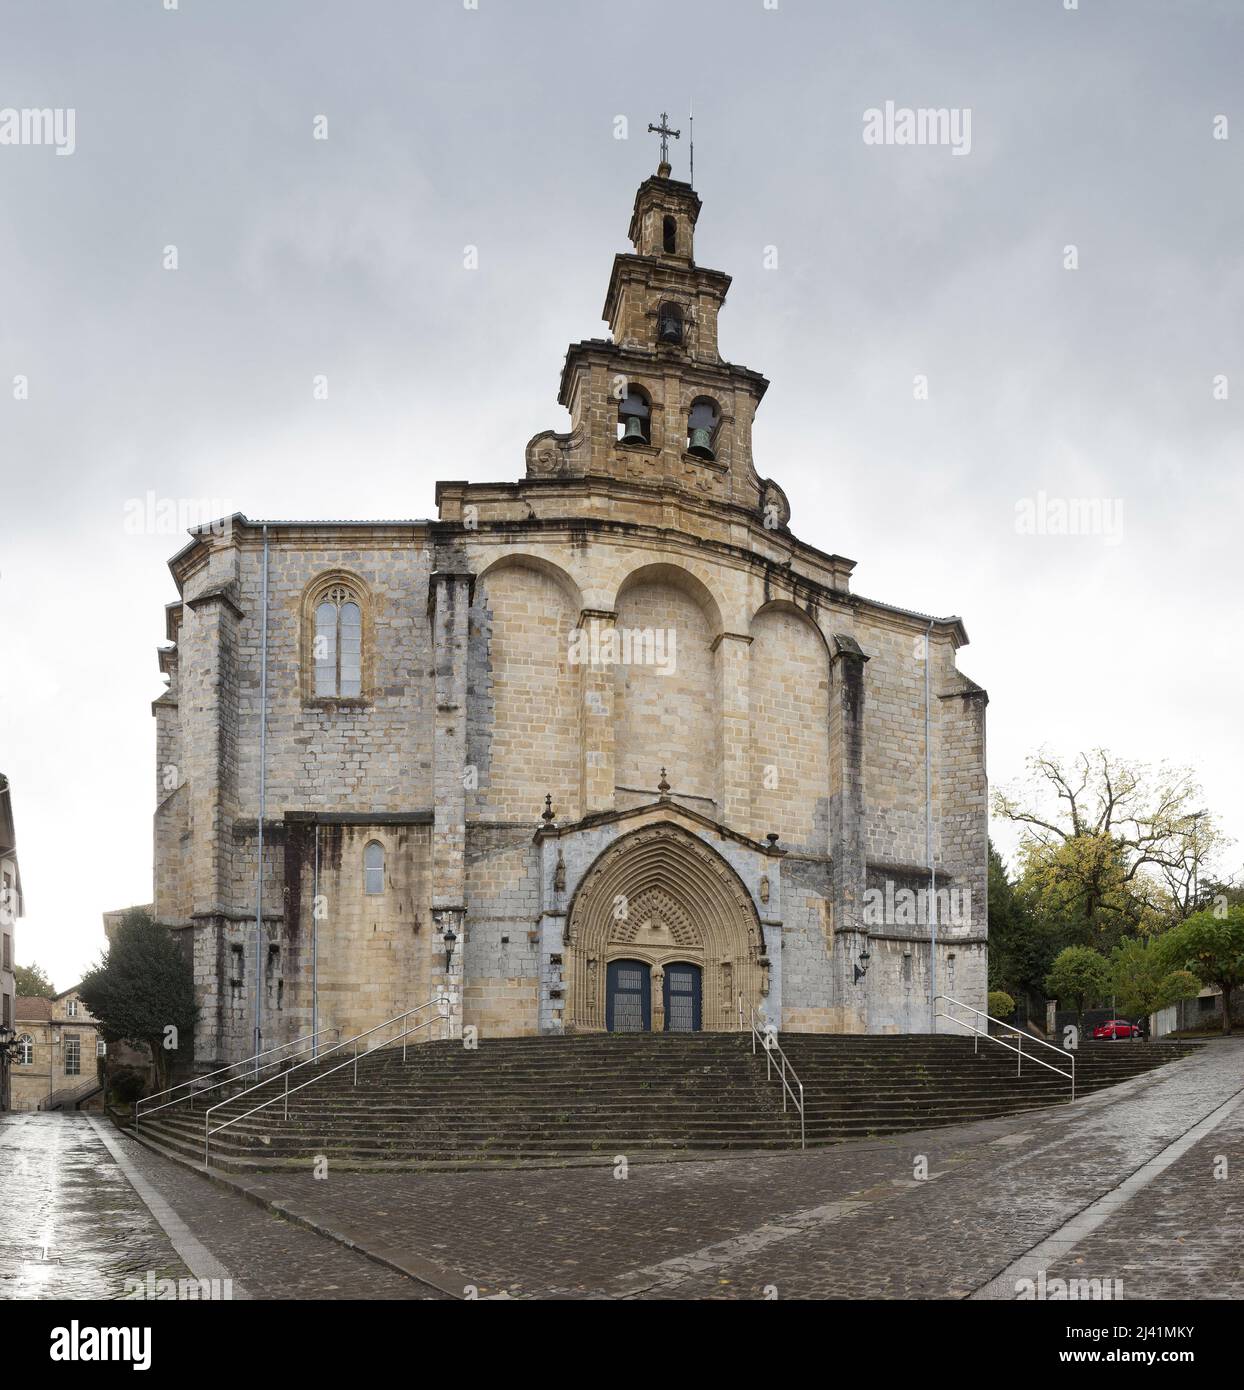 Facade de l’eglise Santa Maria a Guernica, construite au 16eme siecle dans les styles gothique et renaissance, architecture religieuse du pays basque espagnole.  Guernica, Biscaye, Espagne. Stock Photo